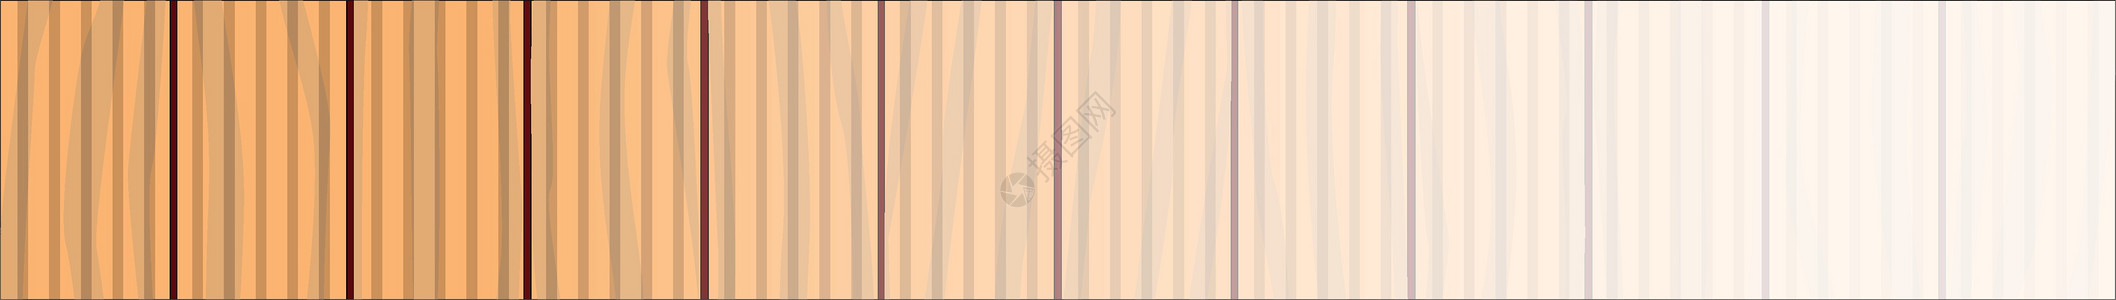 脱形网络淡化背景条纹插图地面艺术木板艺术品木材横幅软木橙子图片